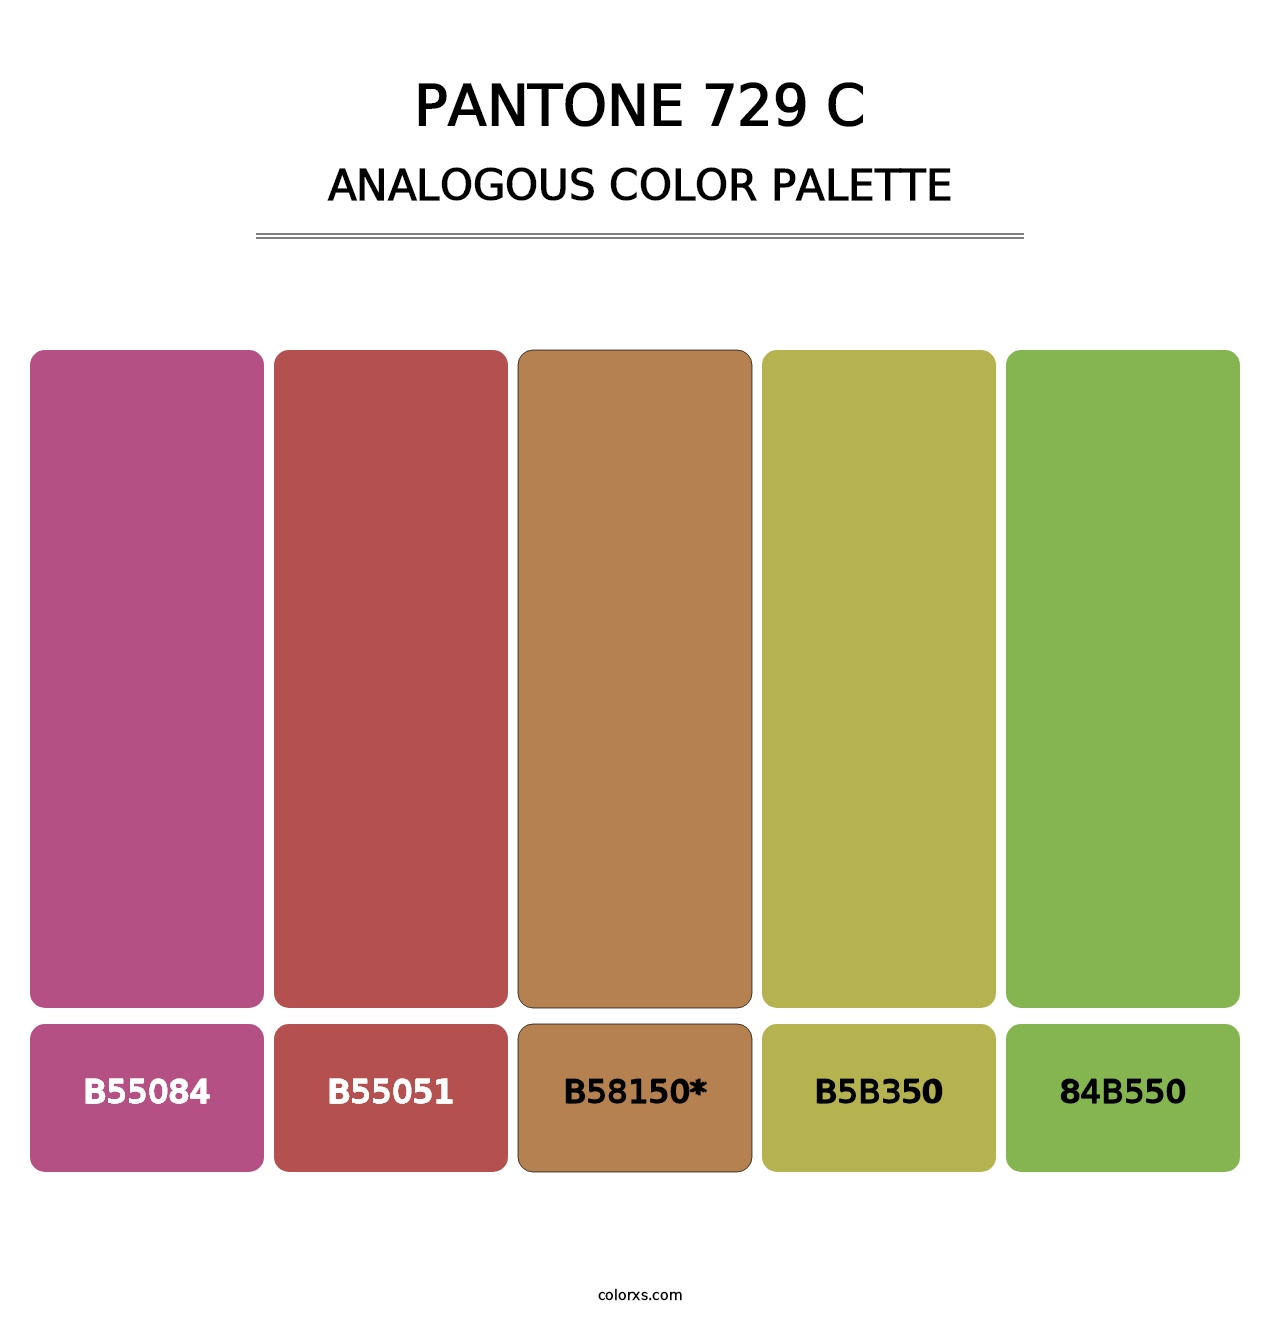 PANTONE 729 C - Analogous Color Palette